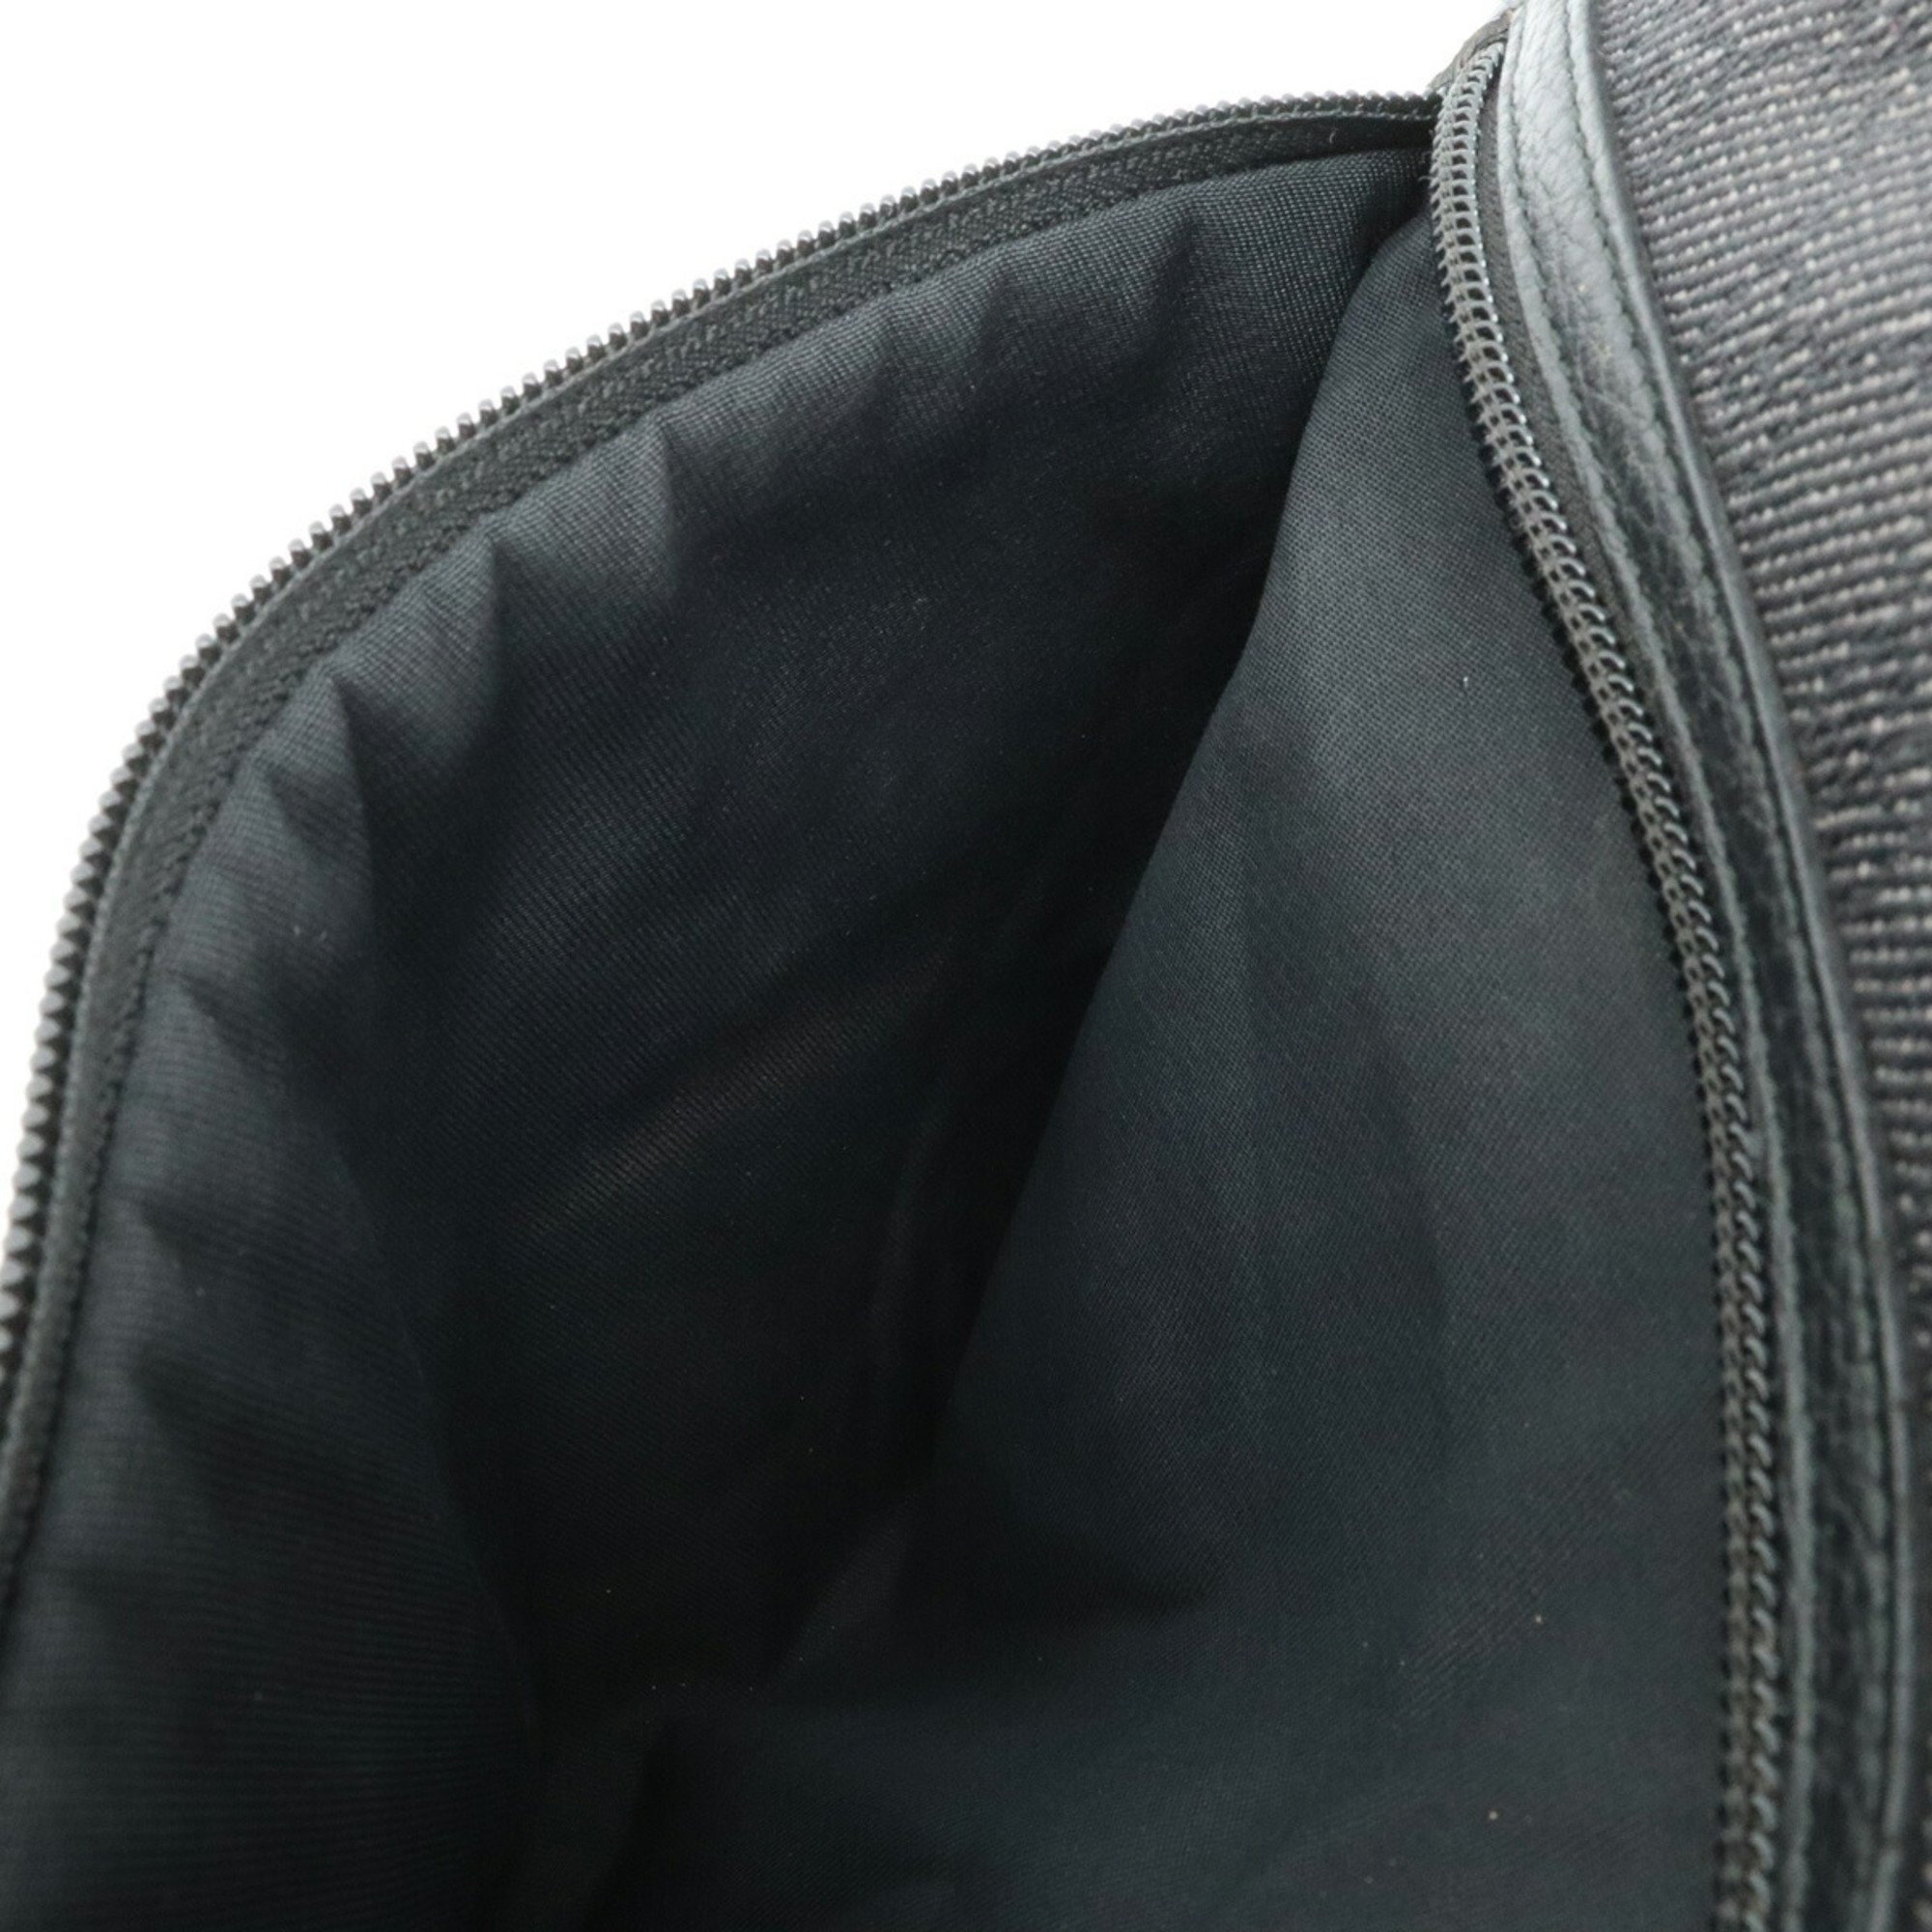 GUCCI GG denim tote bag shoulder canvas leather black 268639